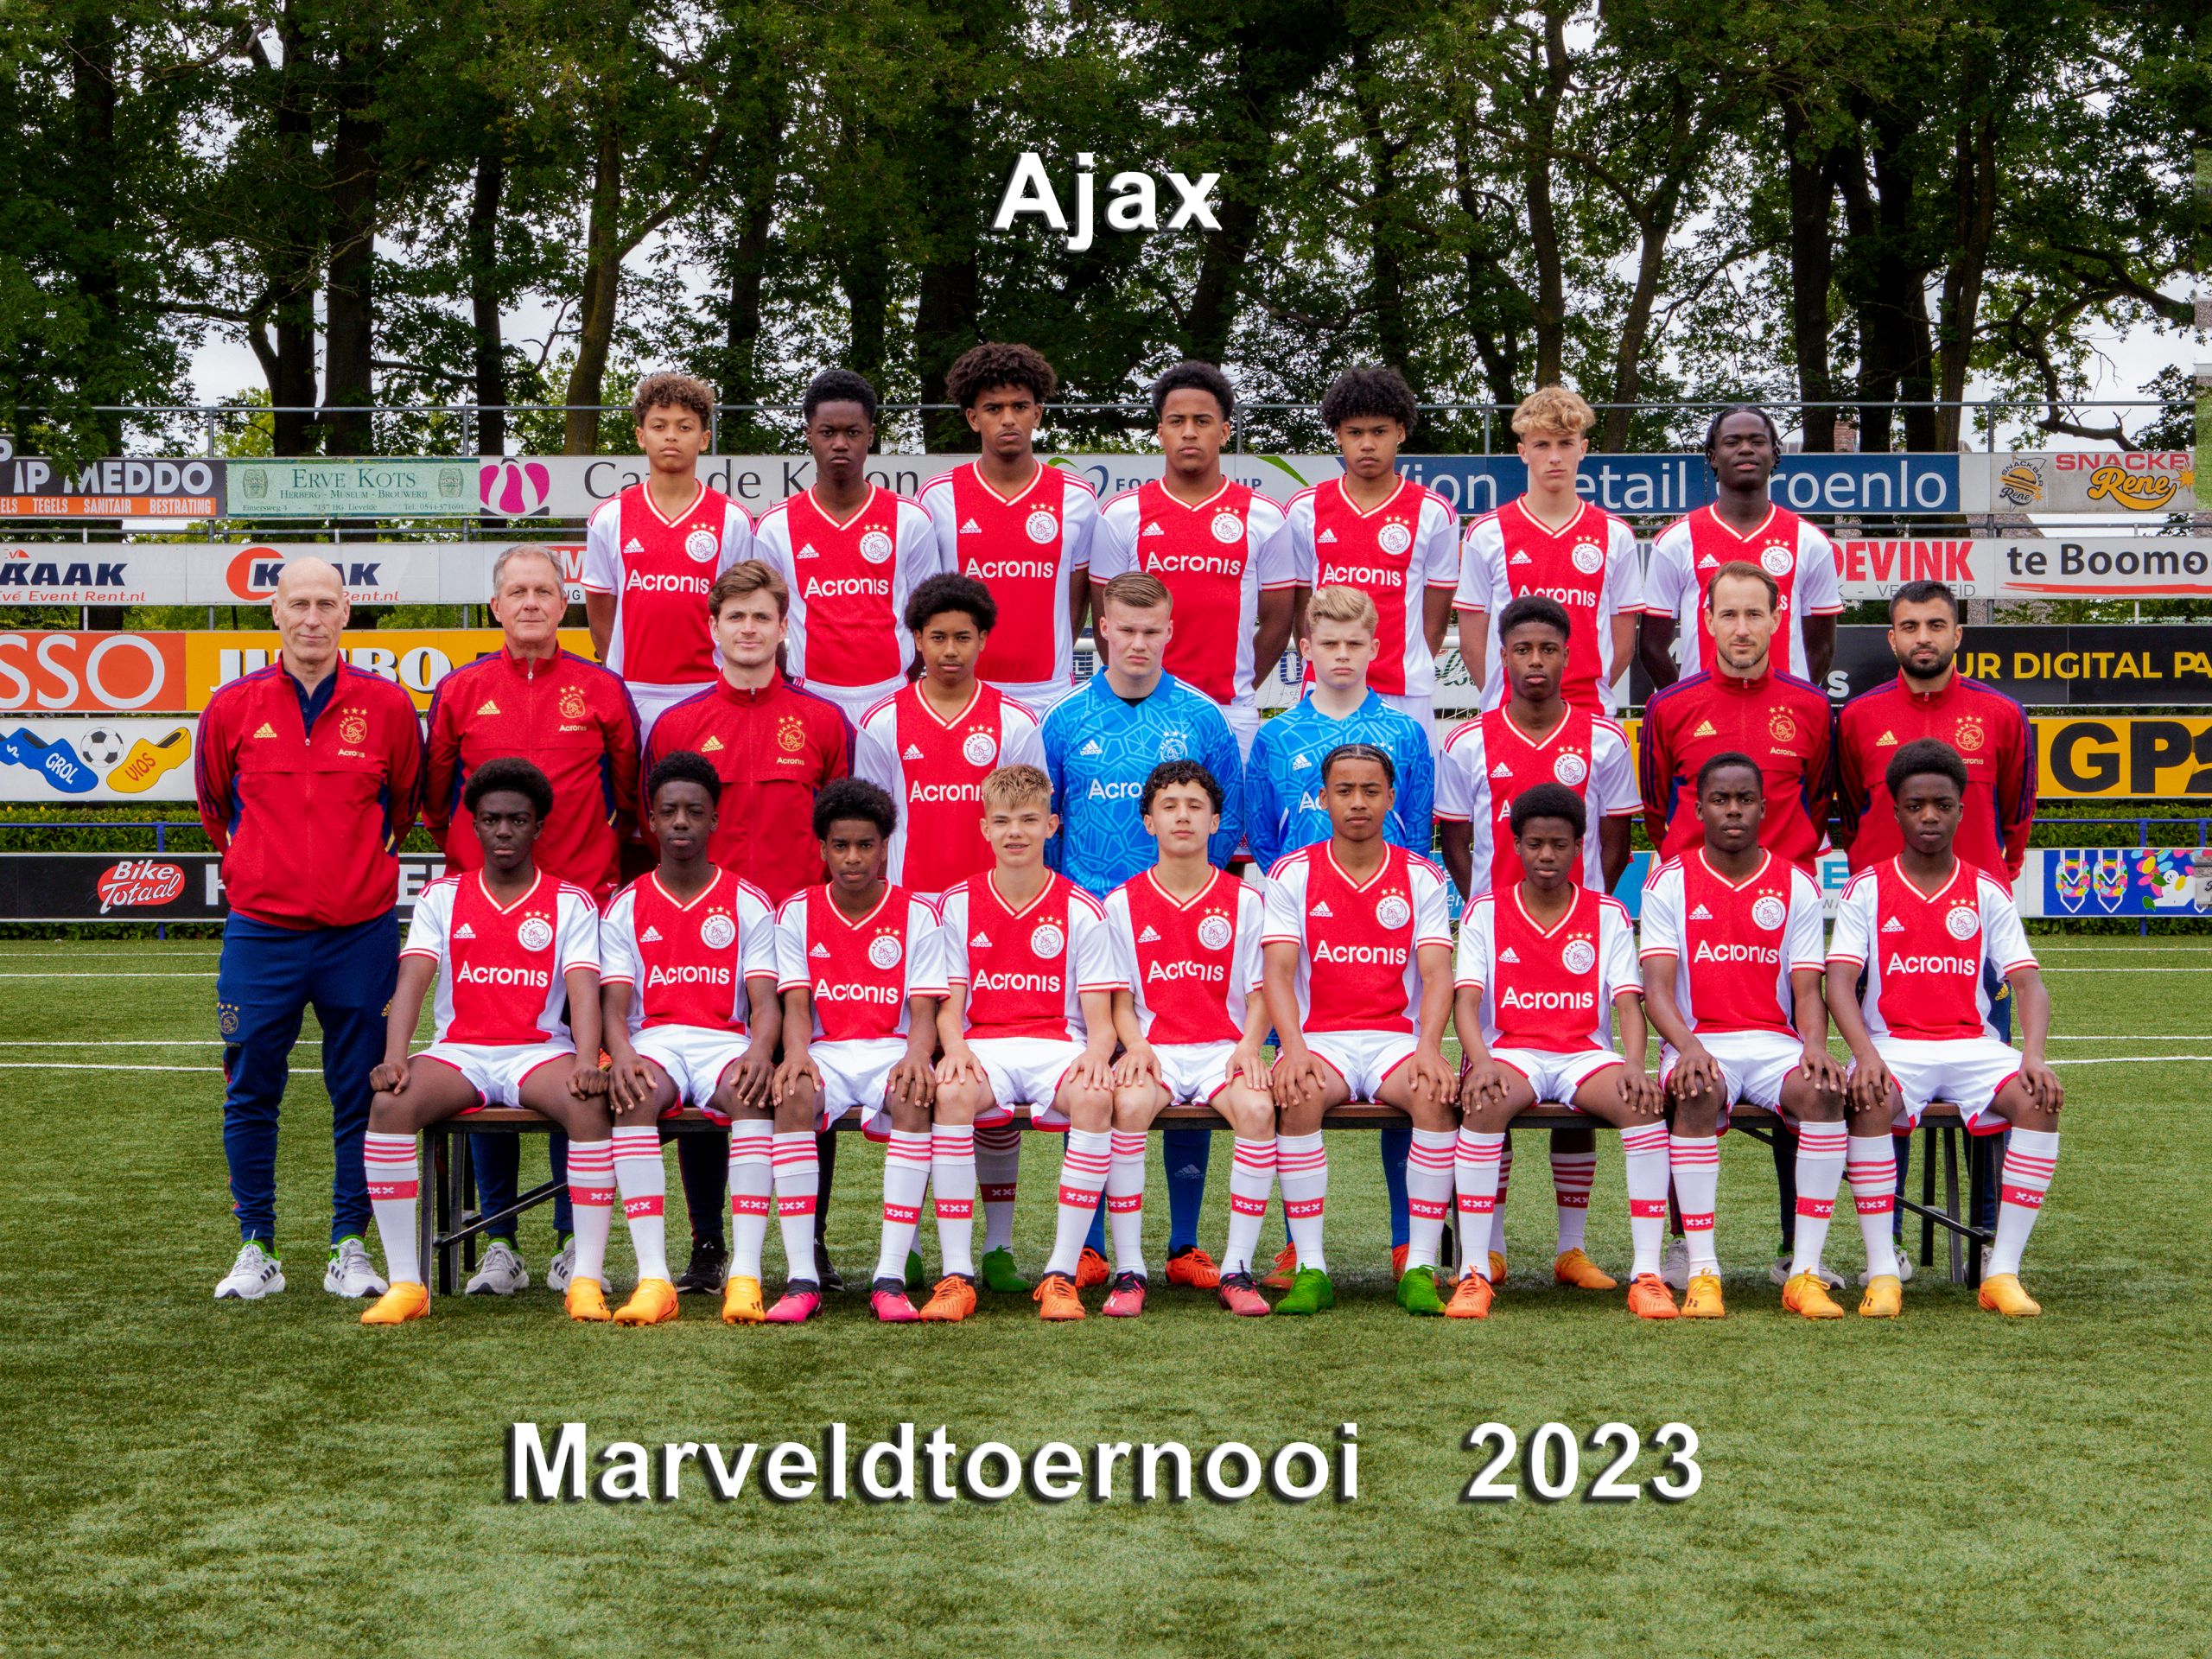 Marveld Tournament 2023 - Team Ajax